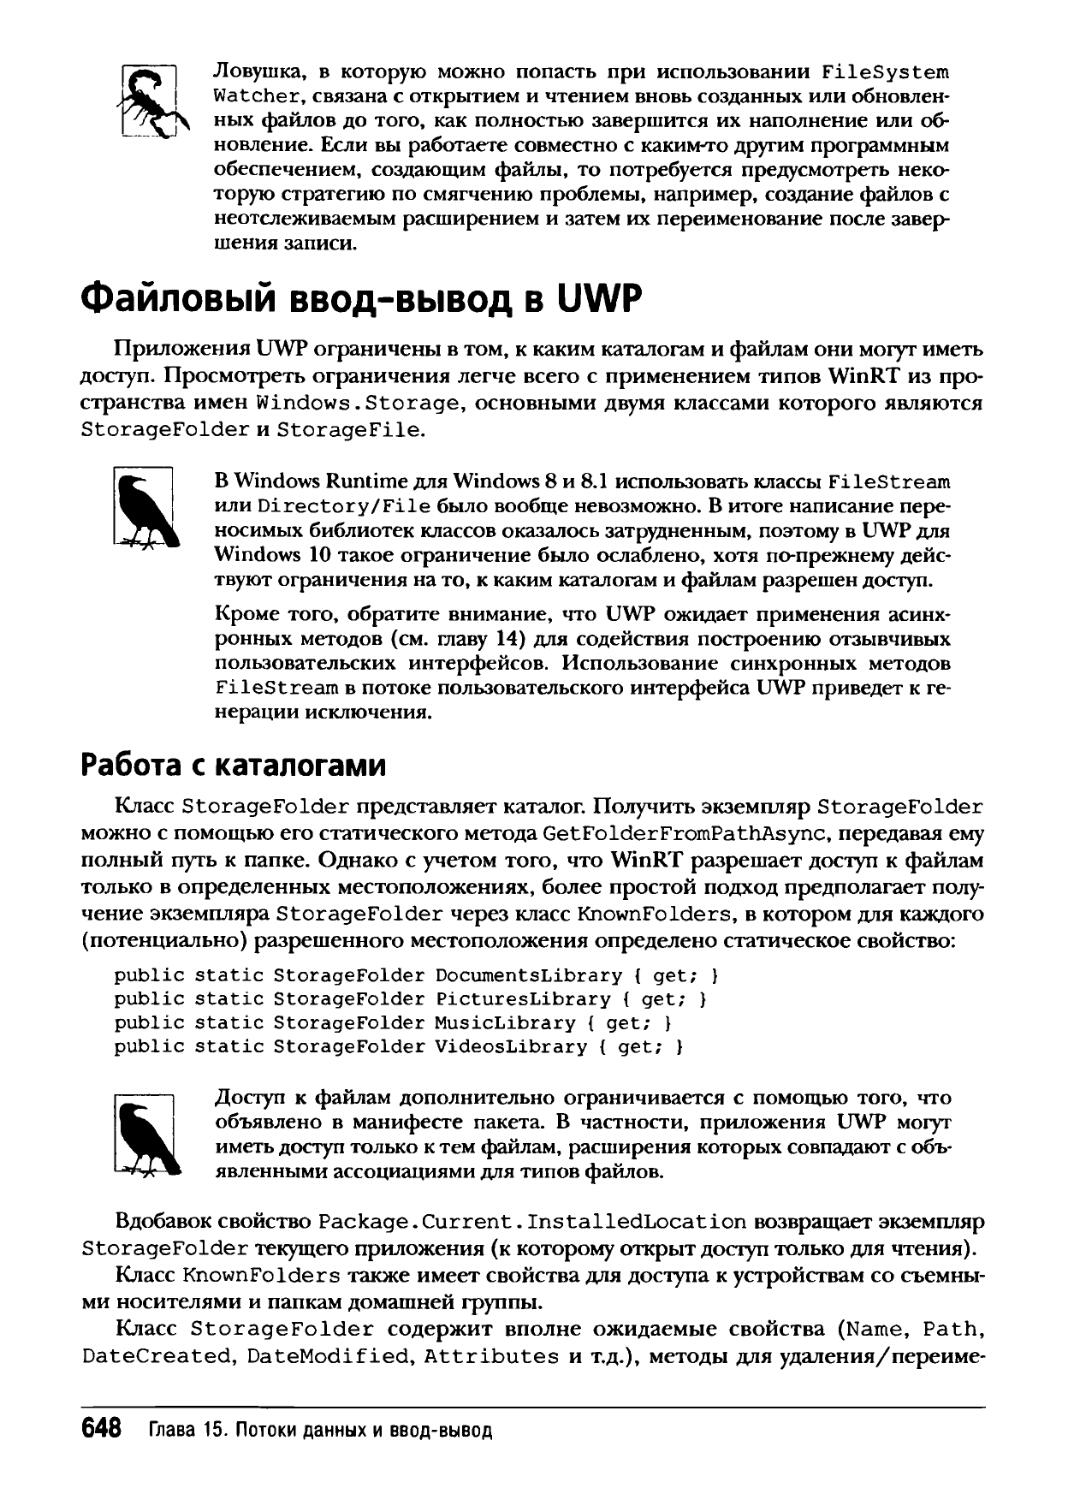 Файловый ввод-вывод в UWP